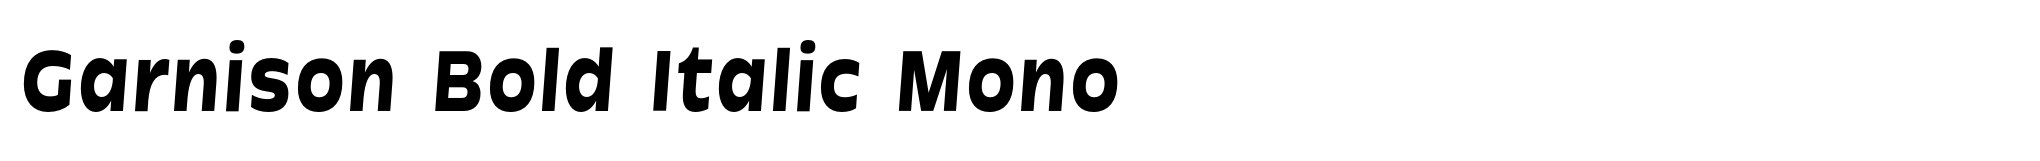 Garnison Bold Italic Mono image